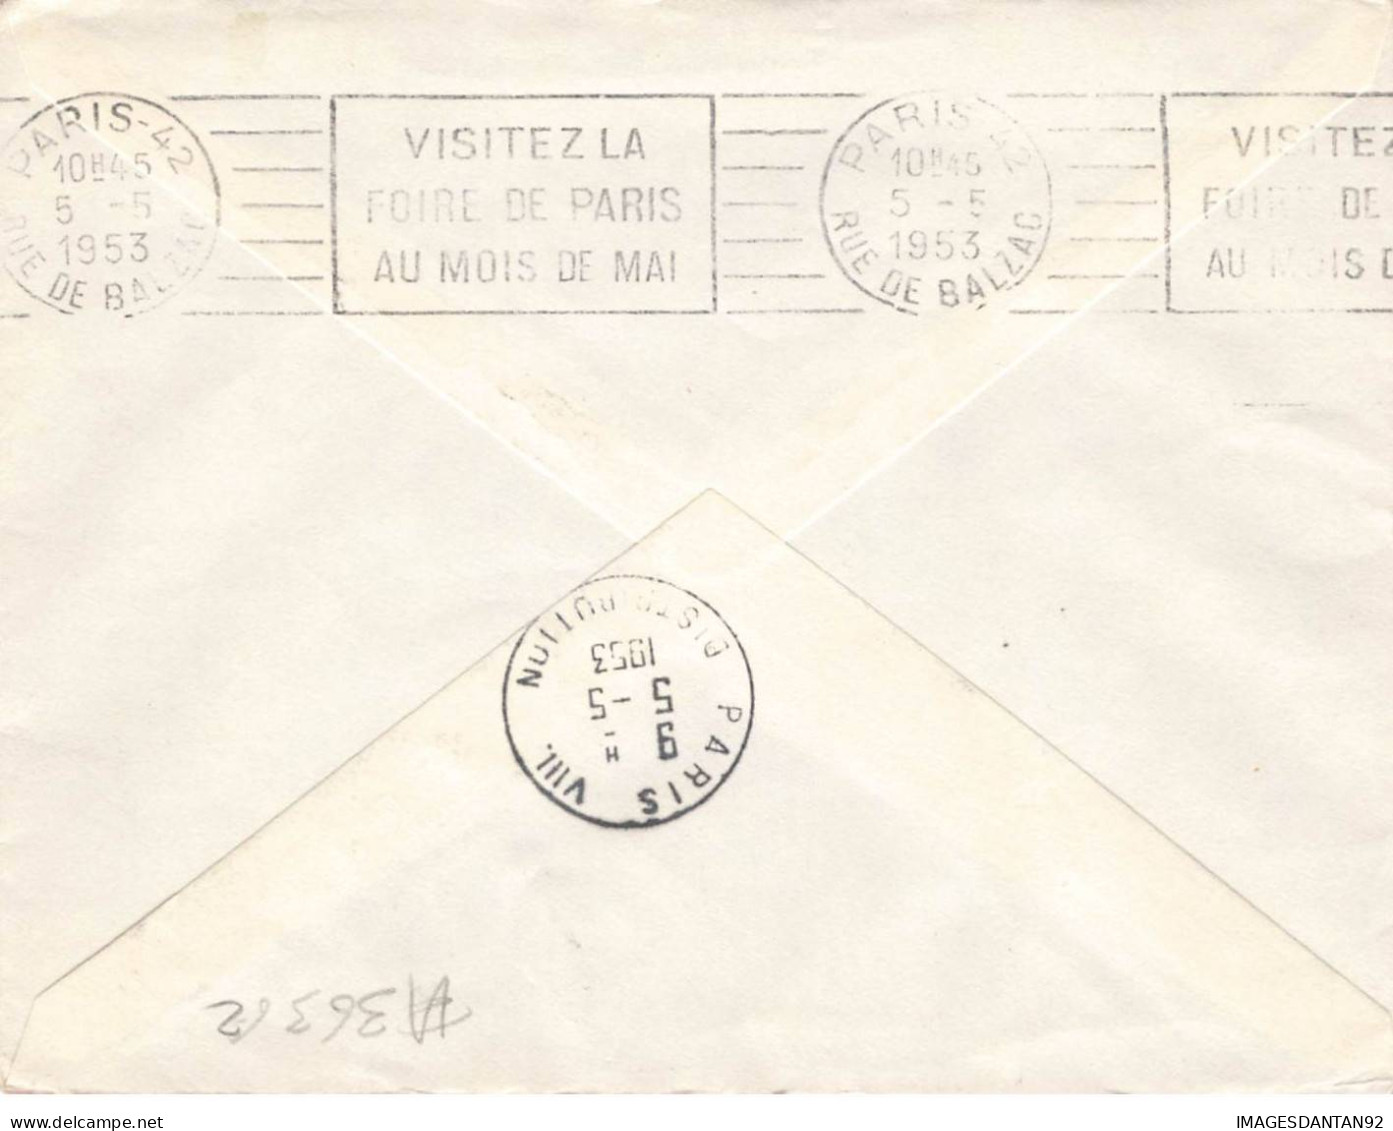 FRANCE #36362 1 ERE LIAISON AERIENNE DE NUIT MONTPELLIER PARIS 1953 - Covers & Documents